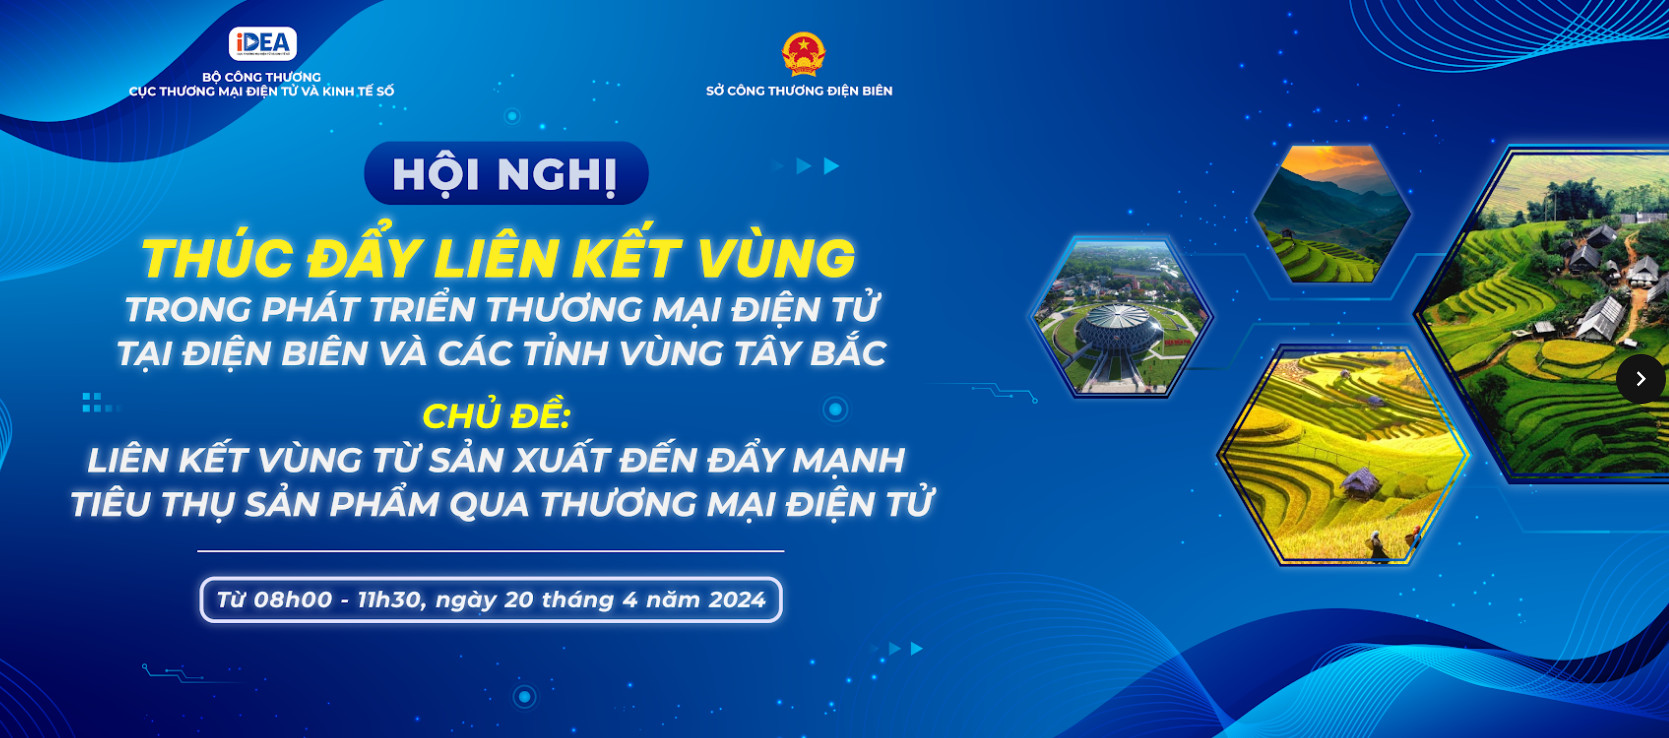 Hội nghị thúc đẩy liên kết vùng trong phát triển thương mại điện tử tại Điện Biên và các tỉnh Vùng Tây Bắc